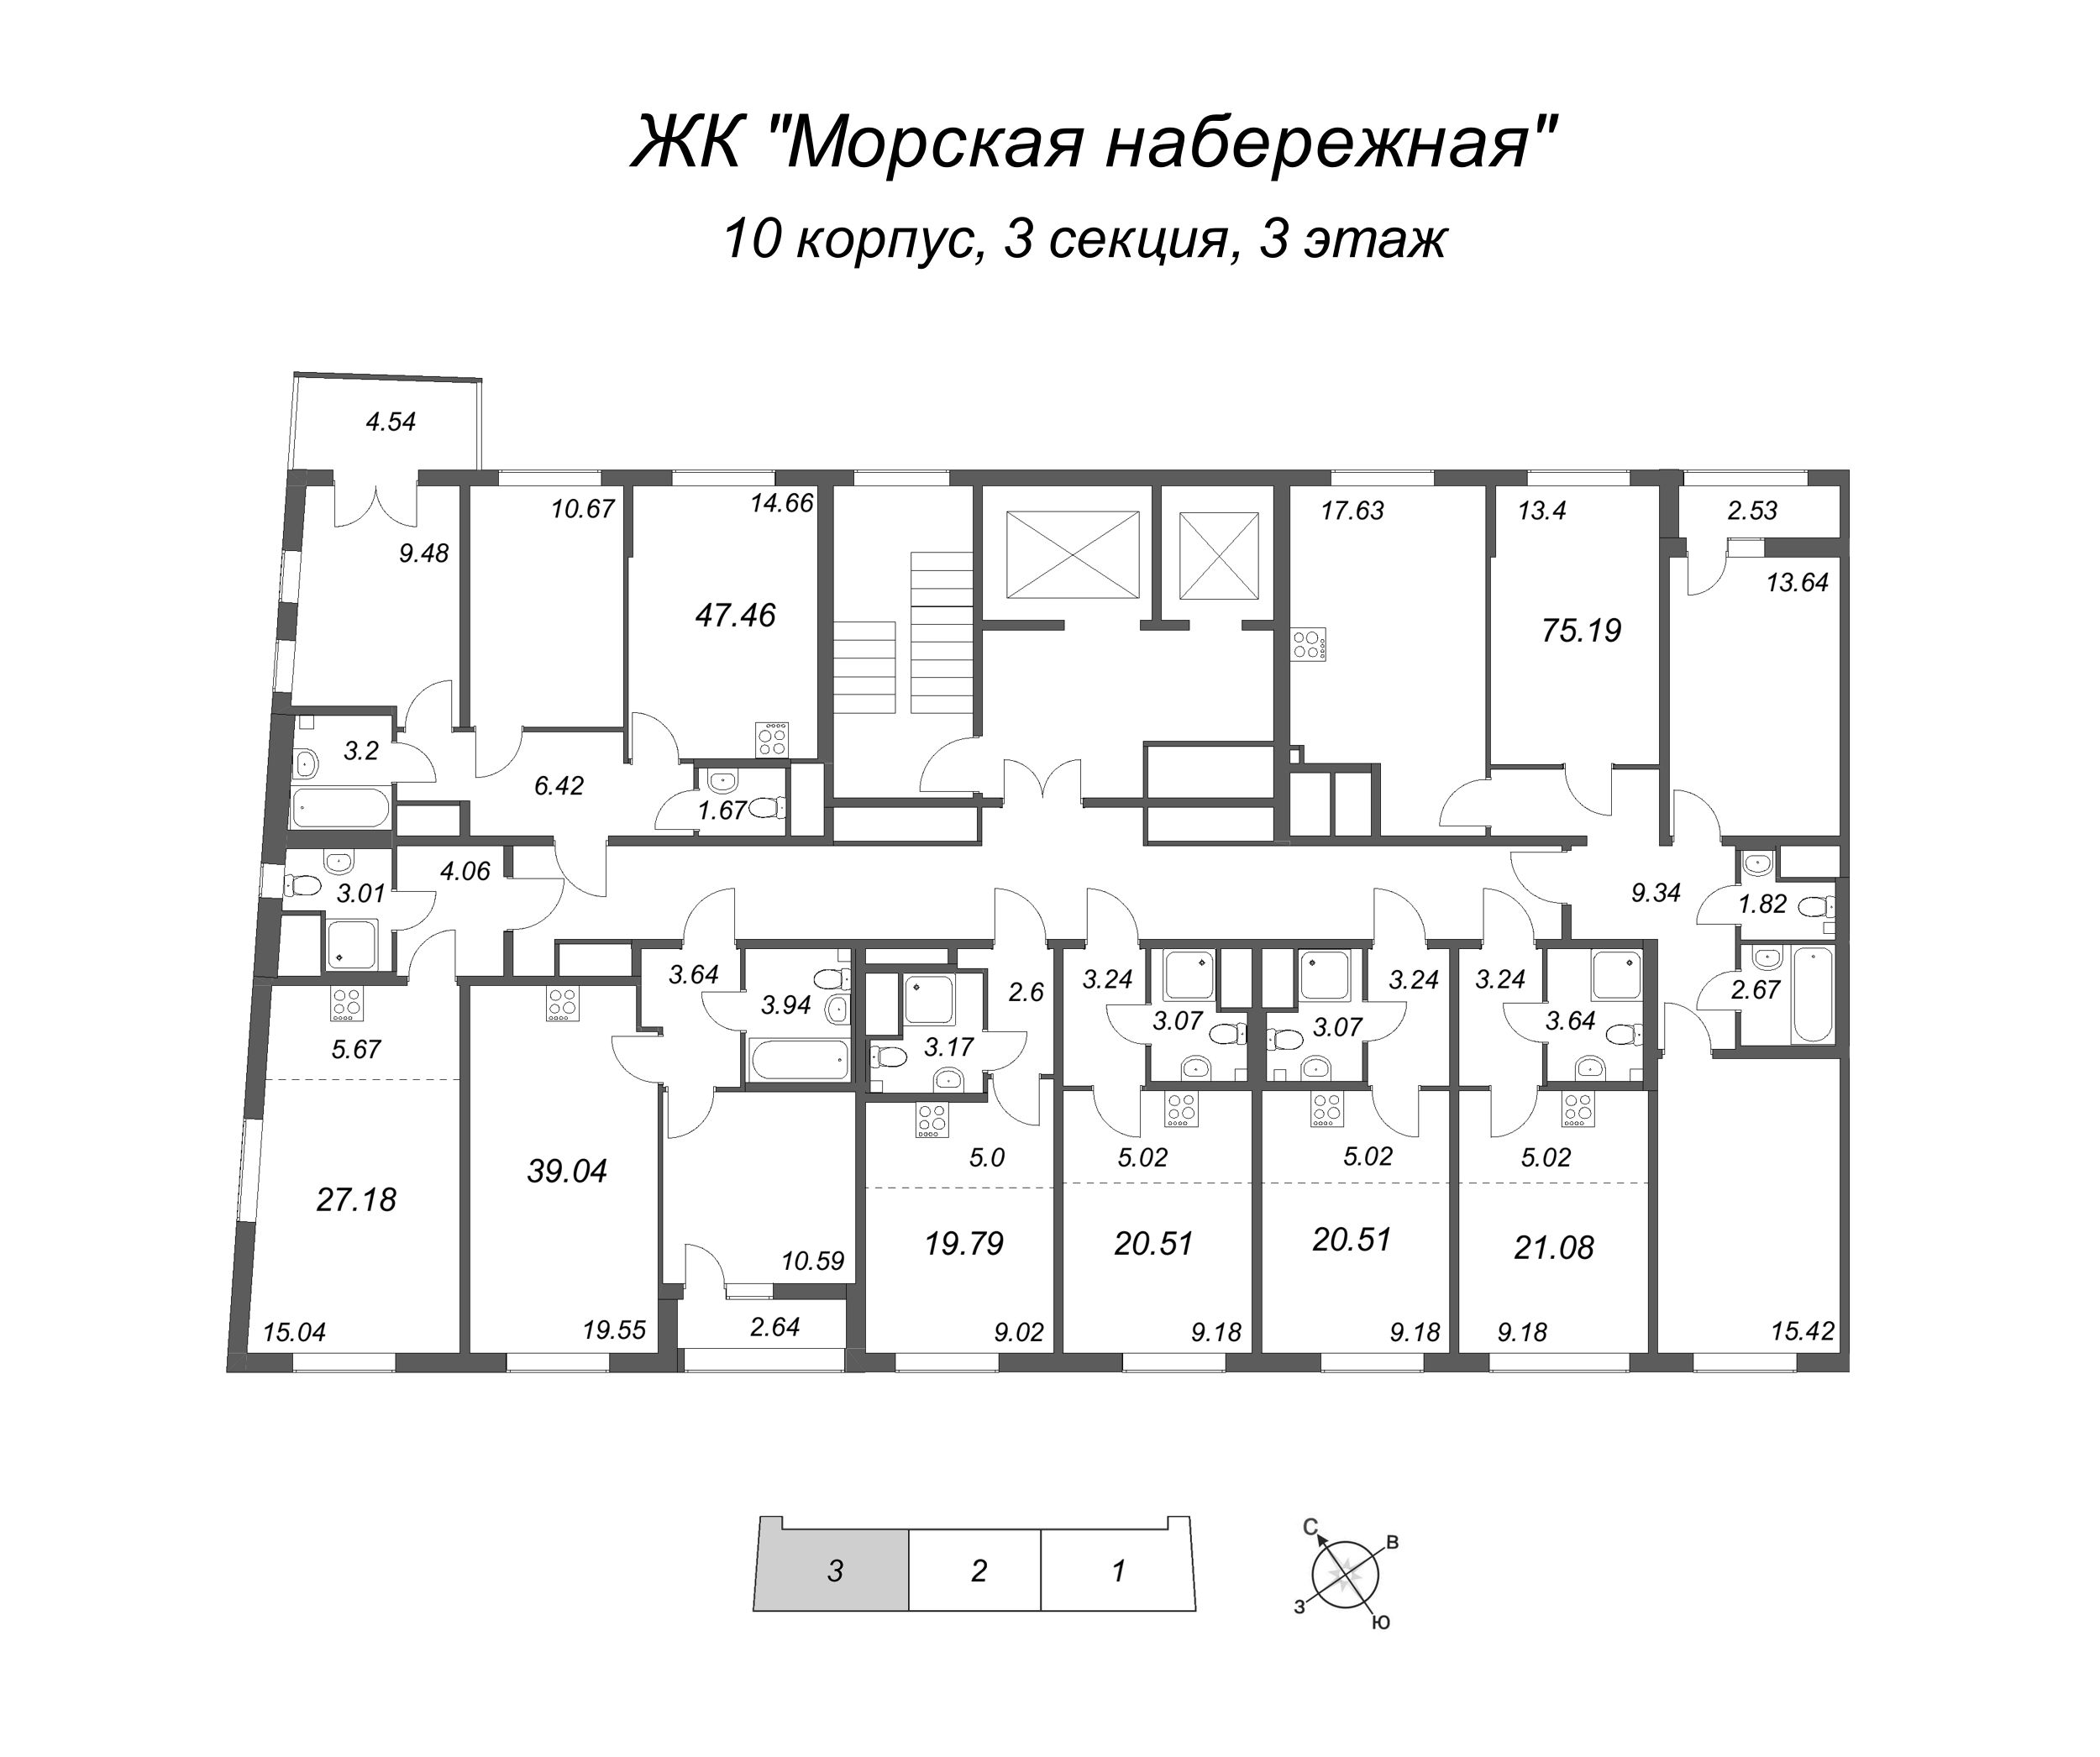 4-комнатная (Евро) квартира, 75.19 м² в ЖК "Морская набережная" - планировка этажа